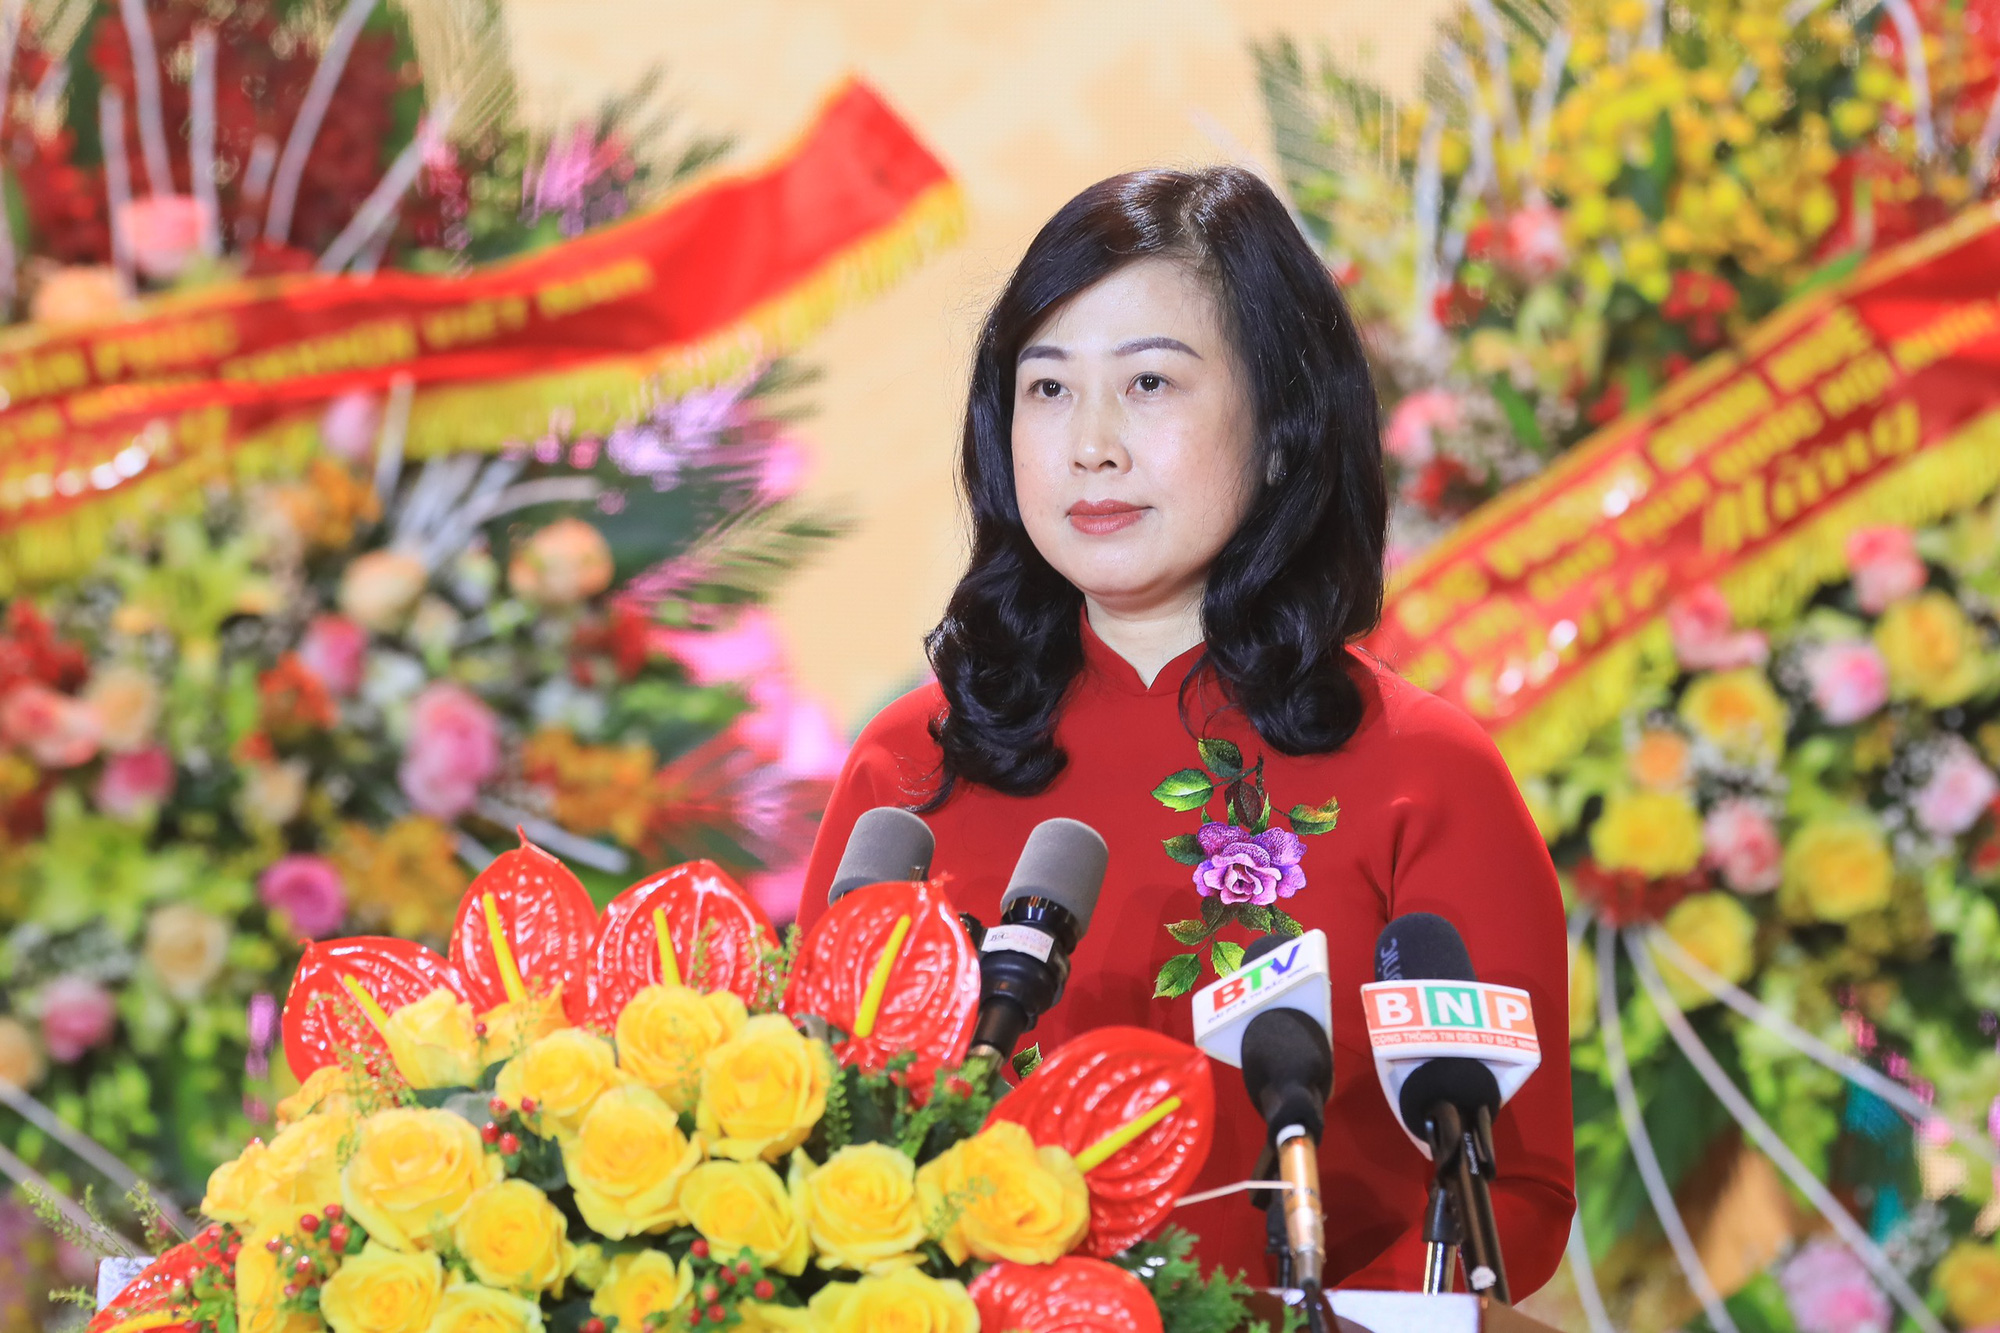 Bắc Ninh - từ tỉnh nông nghiệp trở thành trung tâm công nghiệp hiện đại, đứng đầu cả nước  - Ảnh 2.